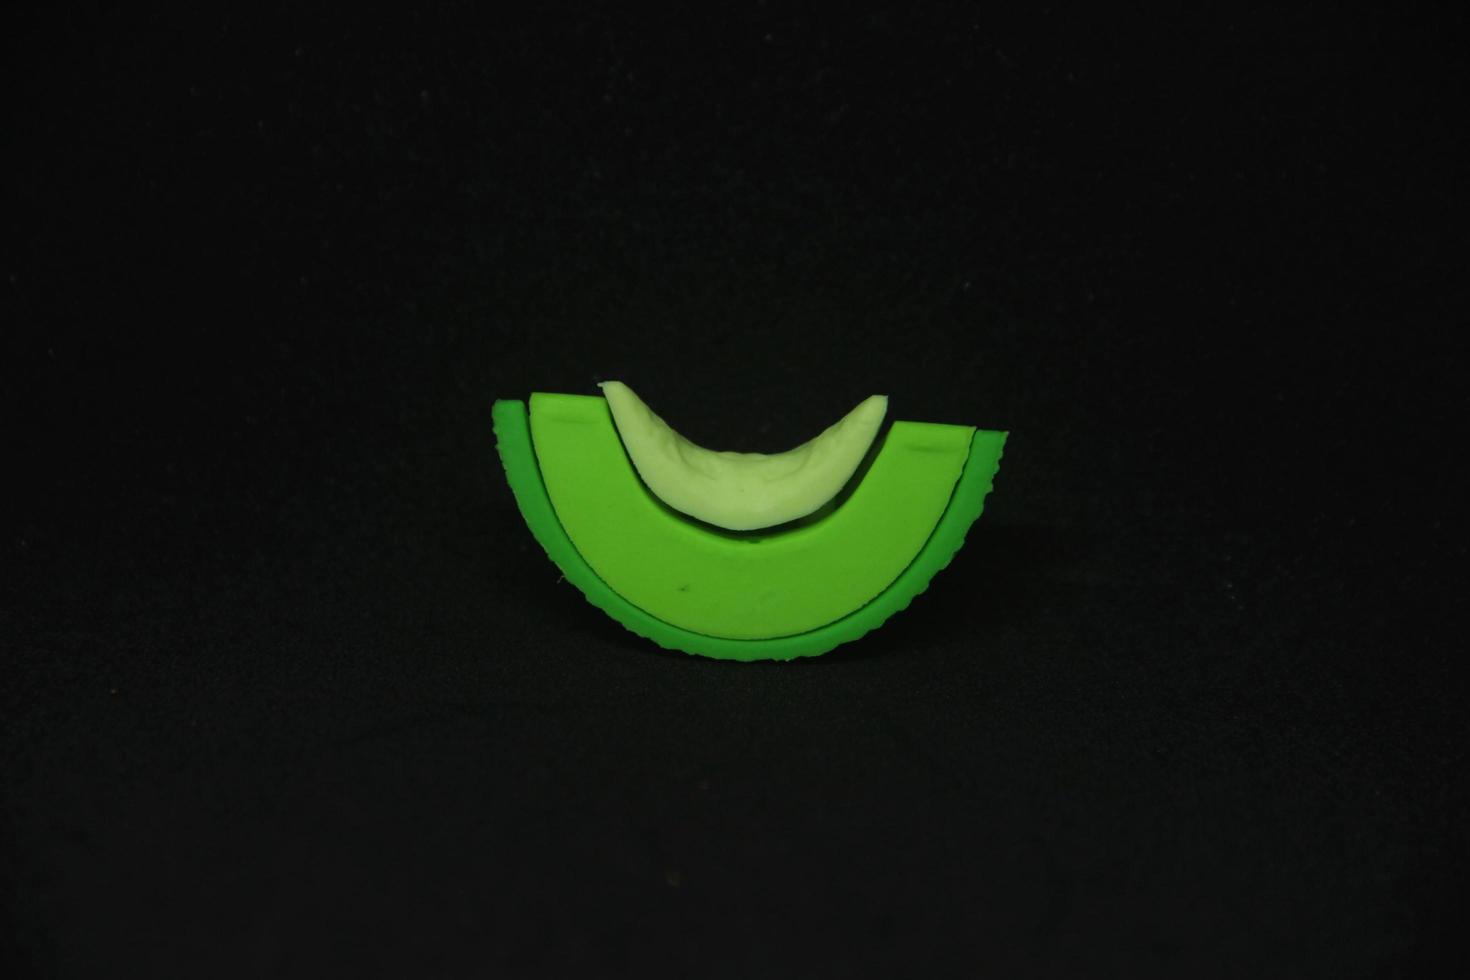 geschnitten Grün Melone geformt Radiergummi stationär Werkzeuge zum Büro oder Schule Lieferungen. isoliert Foto auf einfach dunkel schwarz Hintergrund.